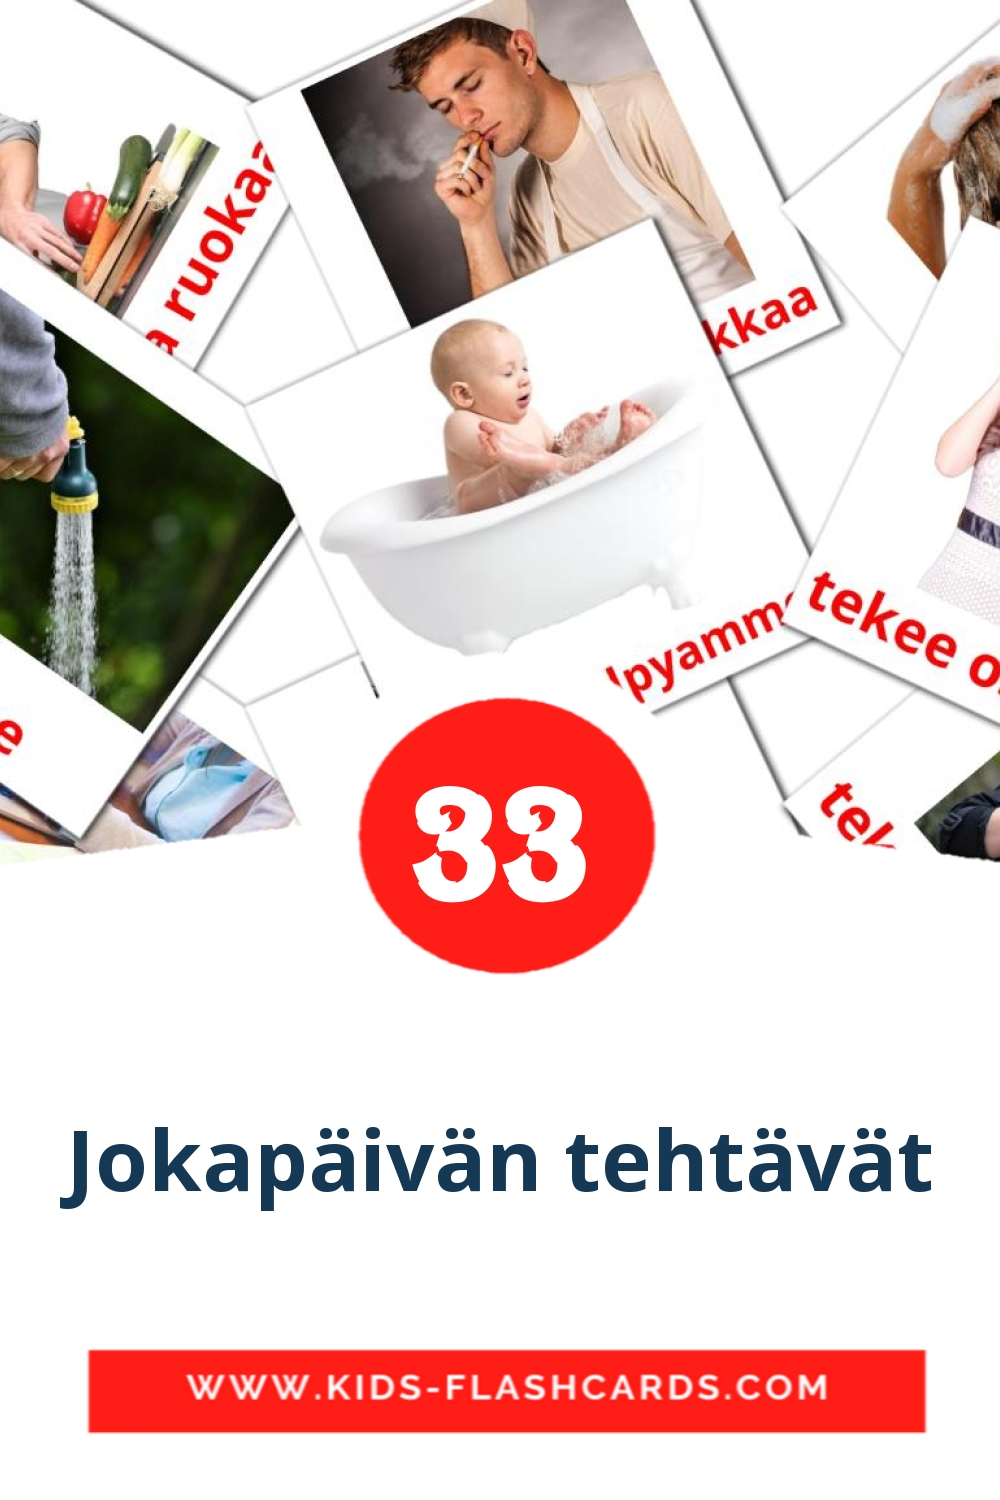 33 tarjetas didacticas de Jokapäivän tehtävät para el jardín de infancia en finlandés